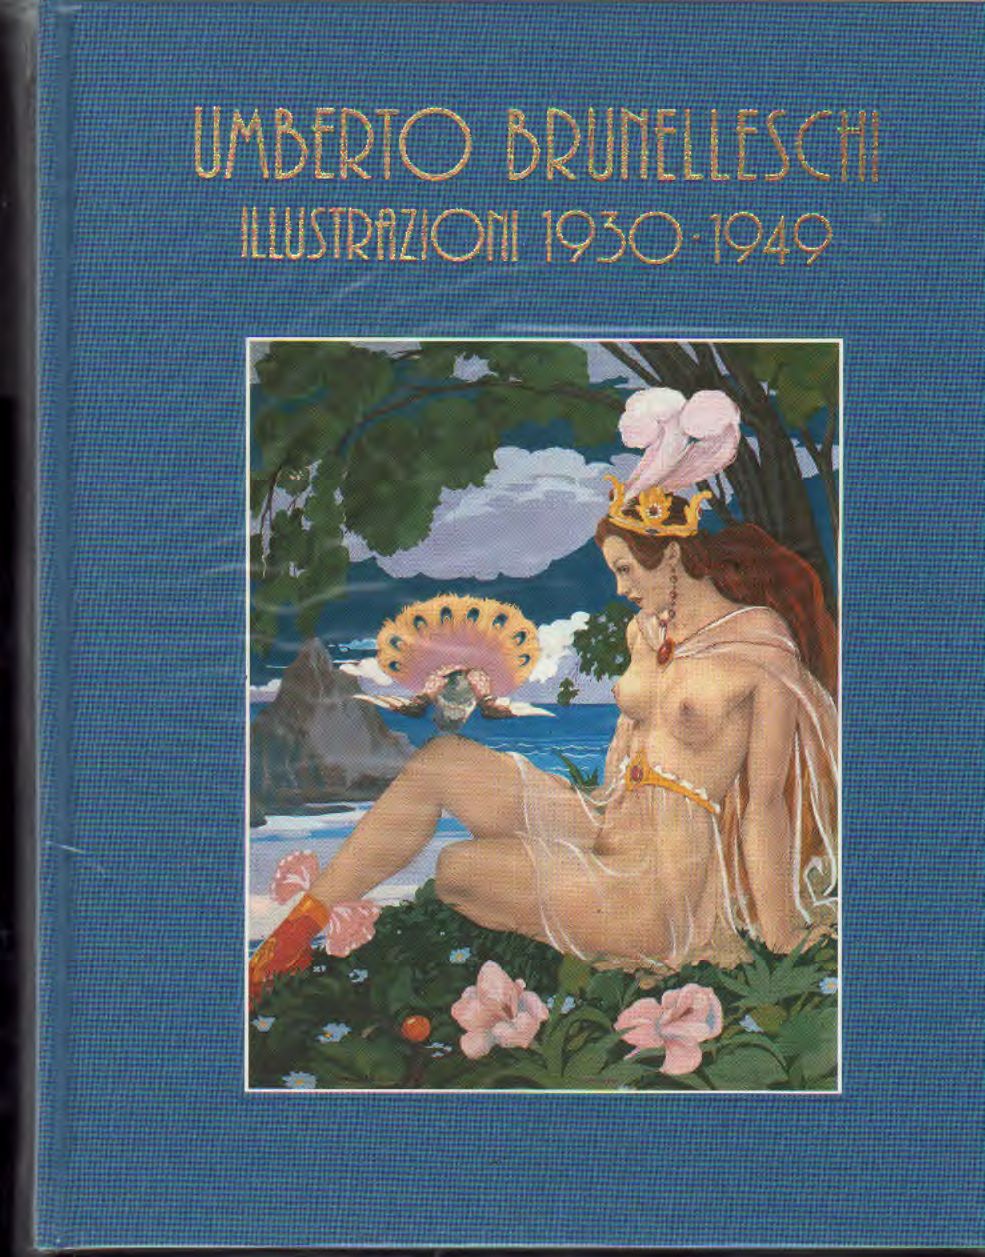 Umberto Brunelleschi  Illustrazioni 1940-1949